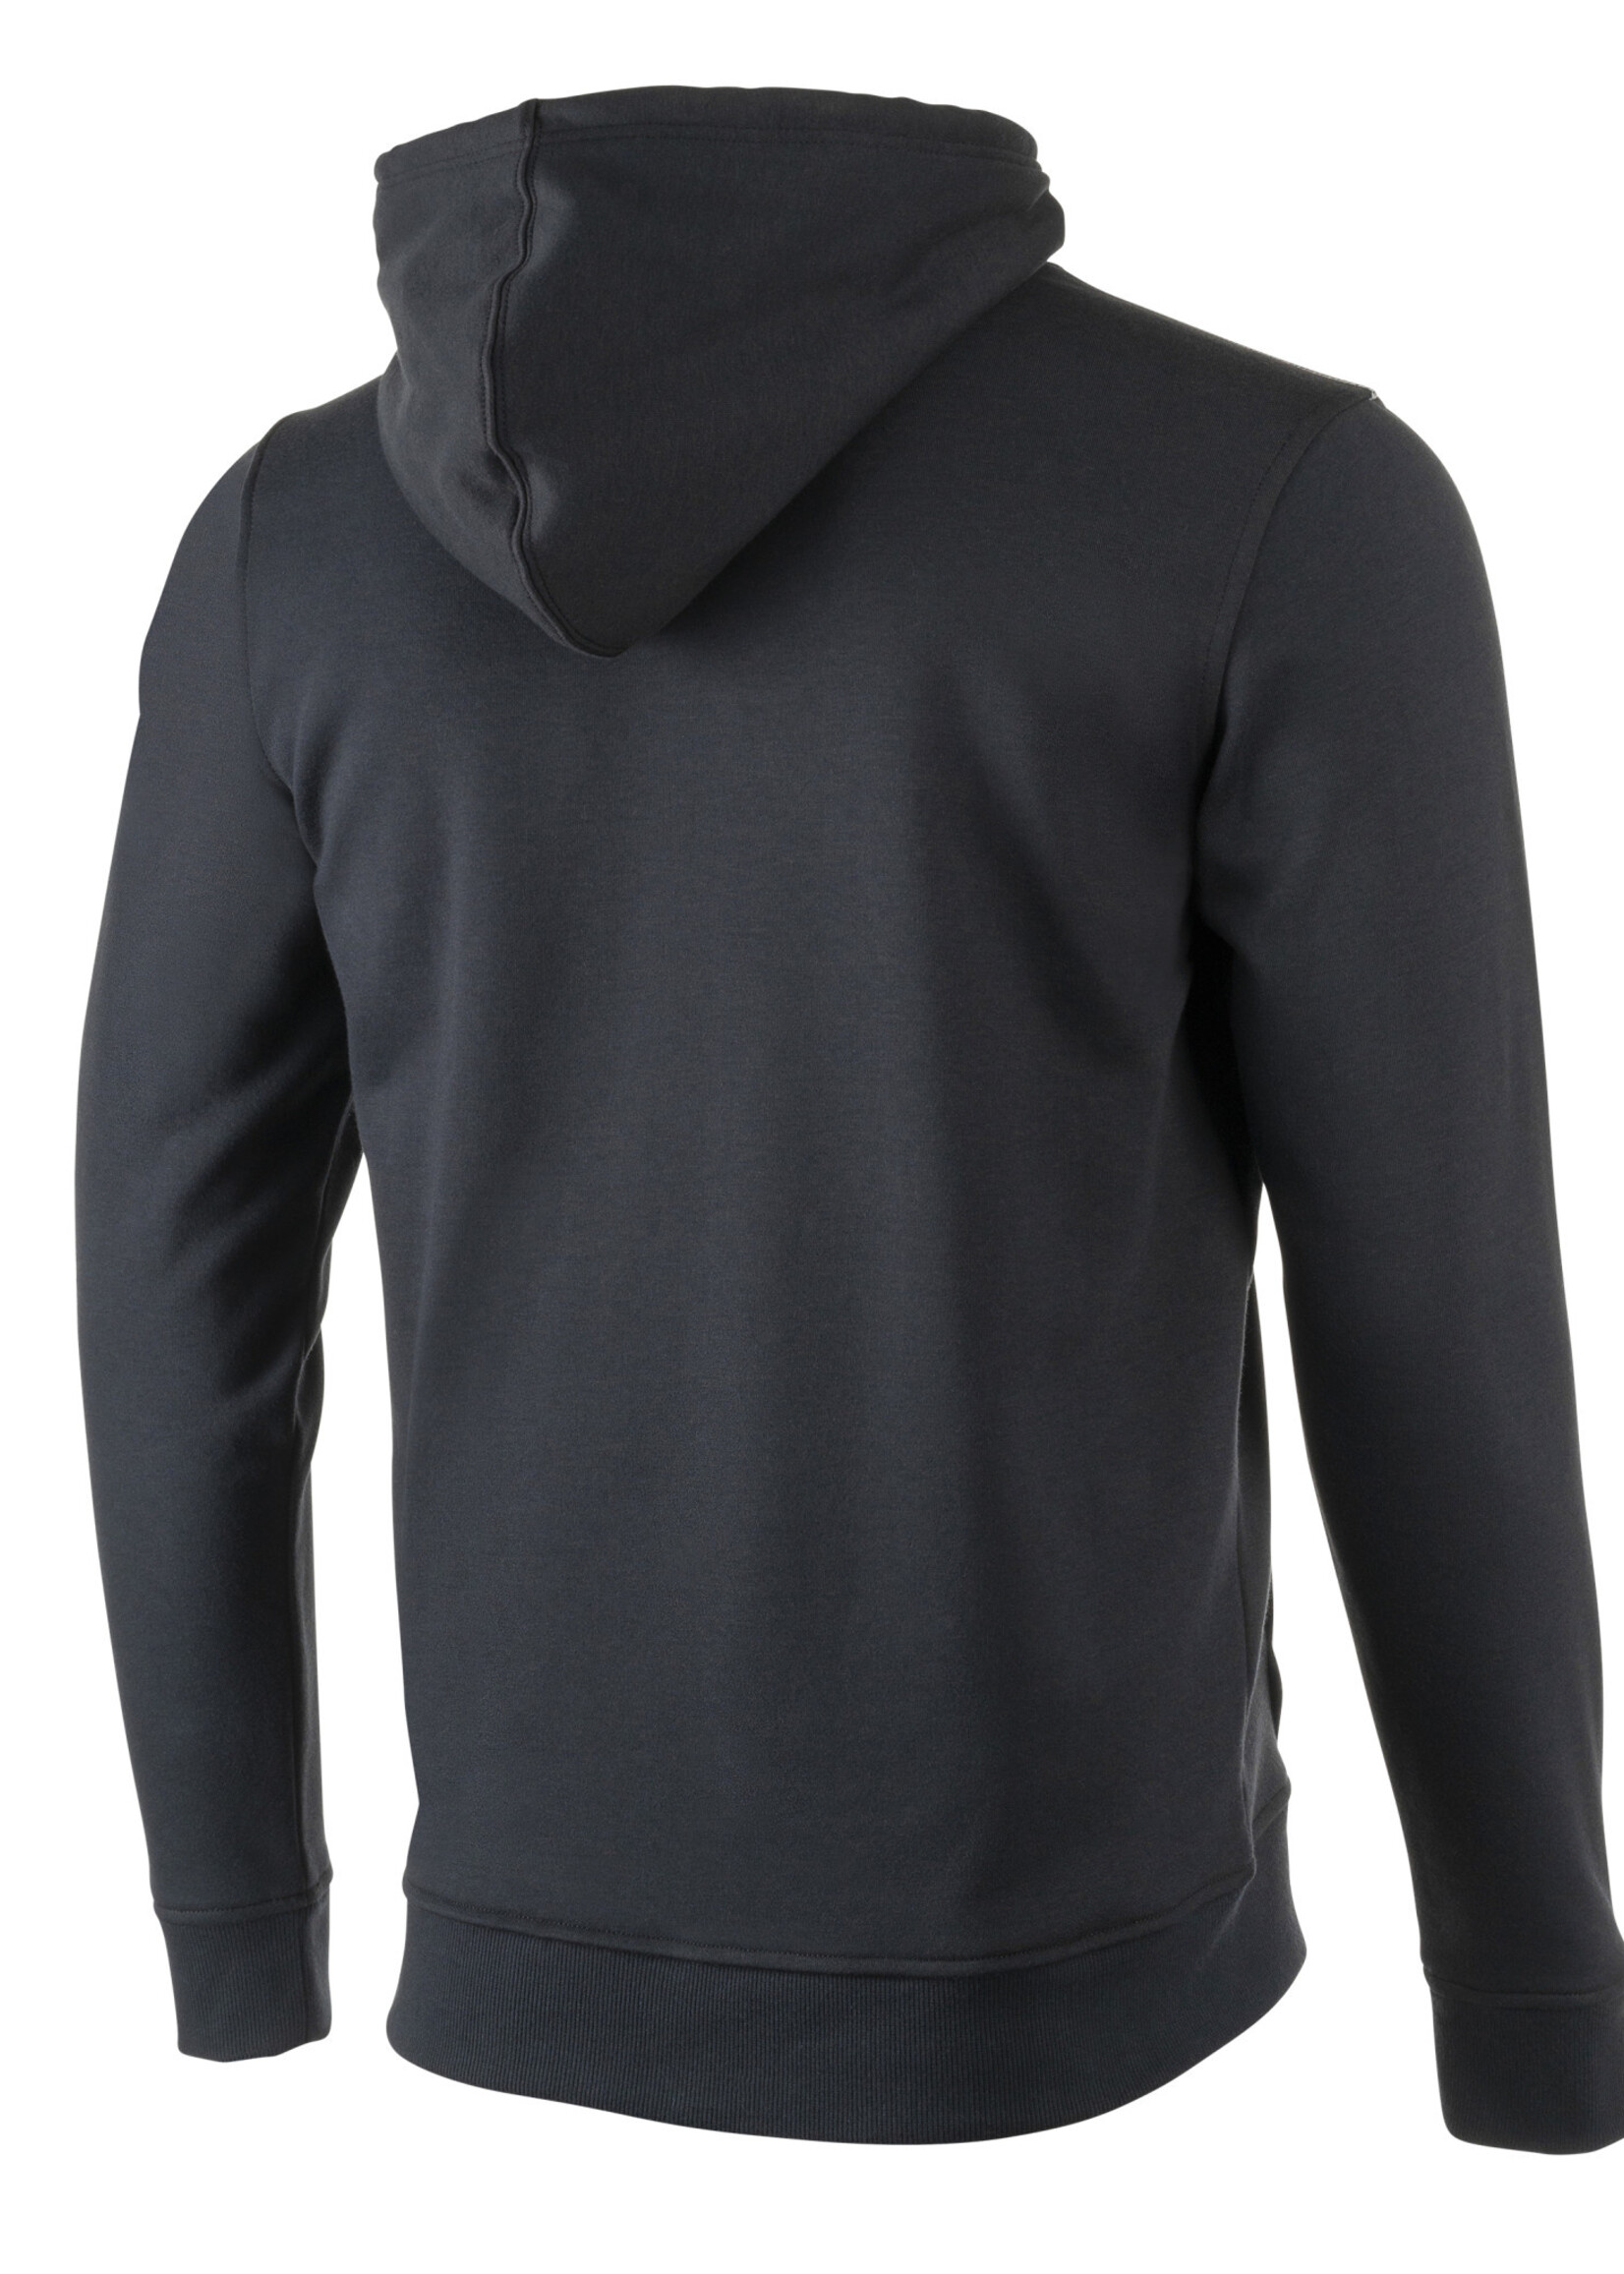 Fleece Hooded Sweatshirt 001 Black